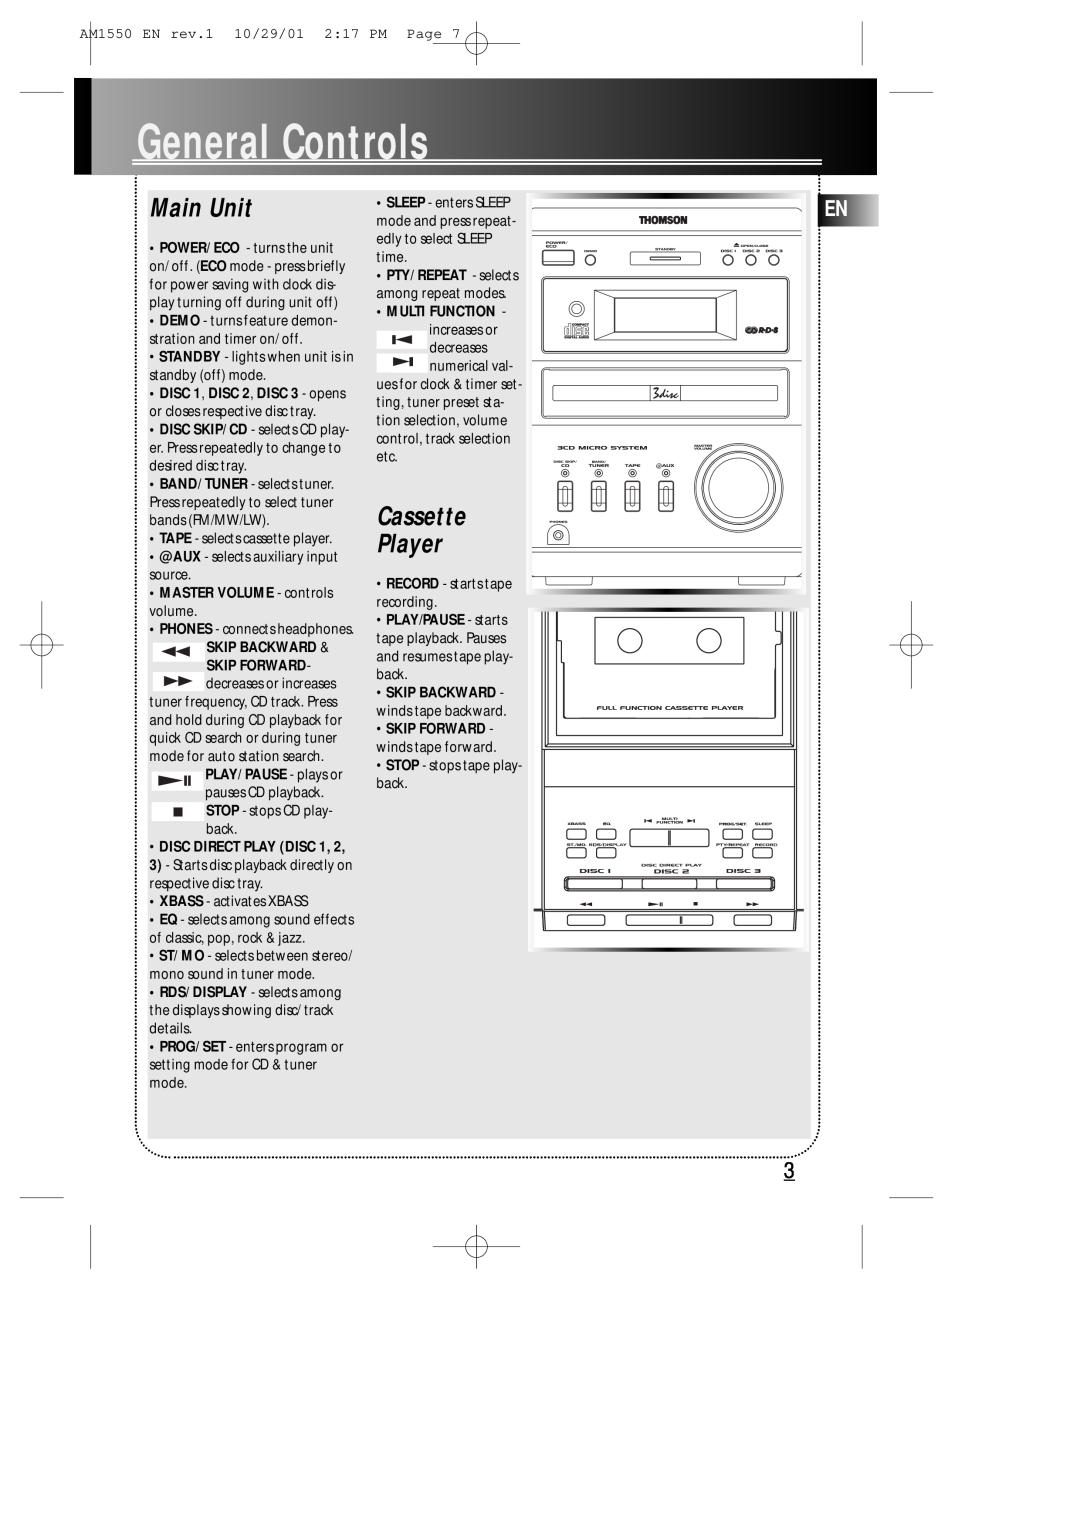 Technicolor - Thomson AM1550 manual GeneralControls, Main Unit, Cassette Player 